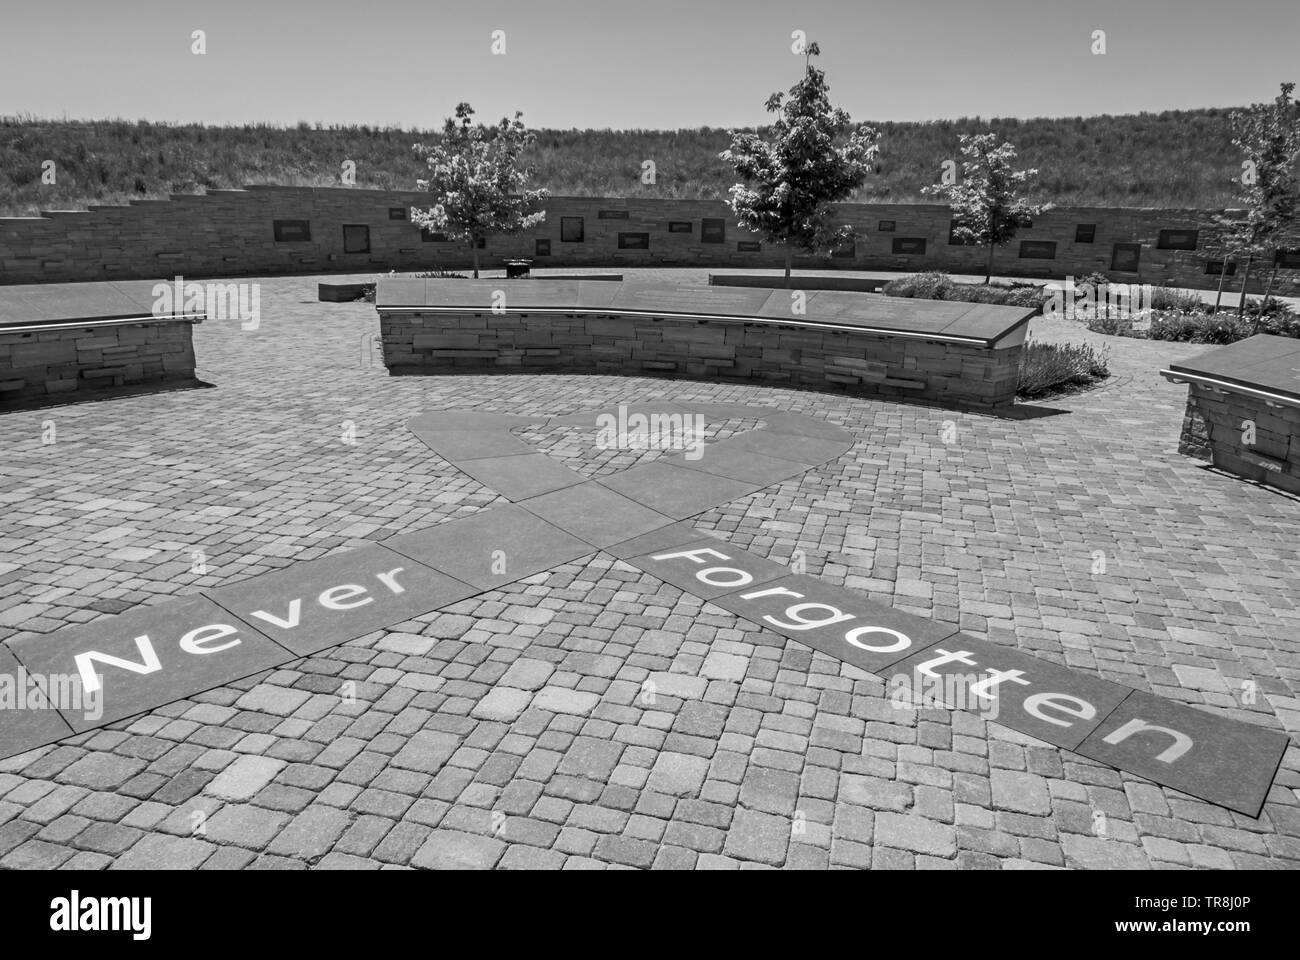 Ingresso alla Columbine High School Memorial che mostra le parole, "mai dimenticato" in primo piano e la visualizzazione di placche in distanza in bianco e nero. Foto Stock